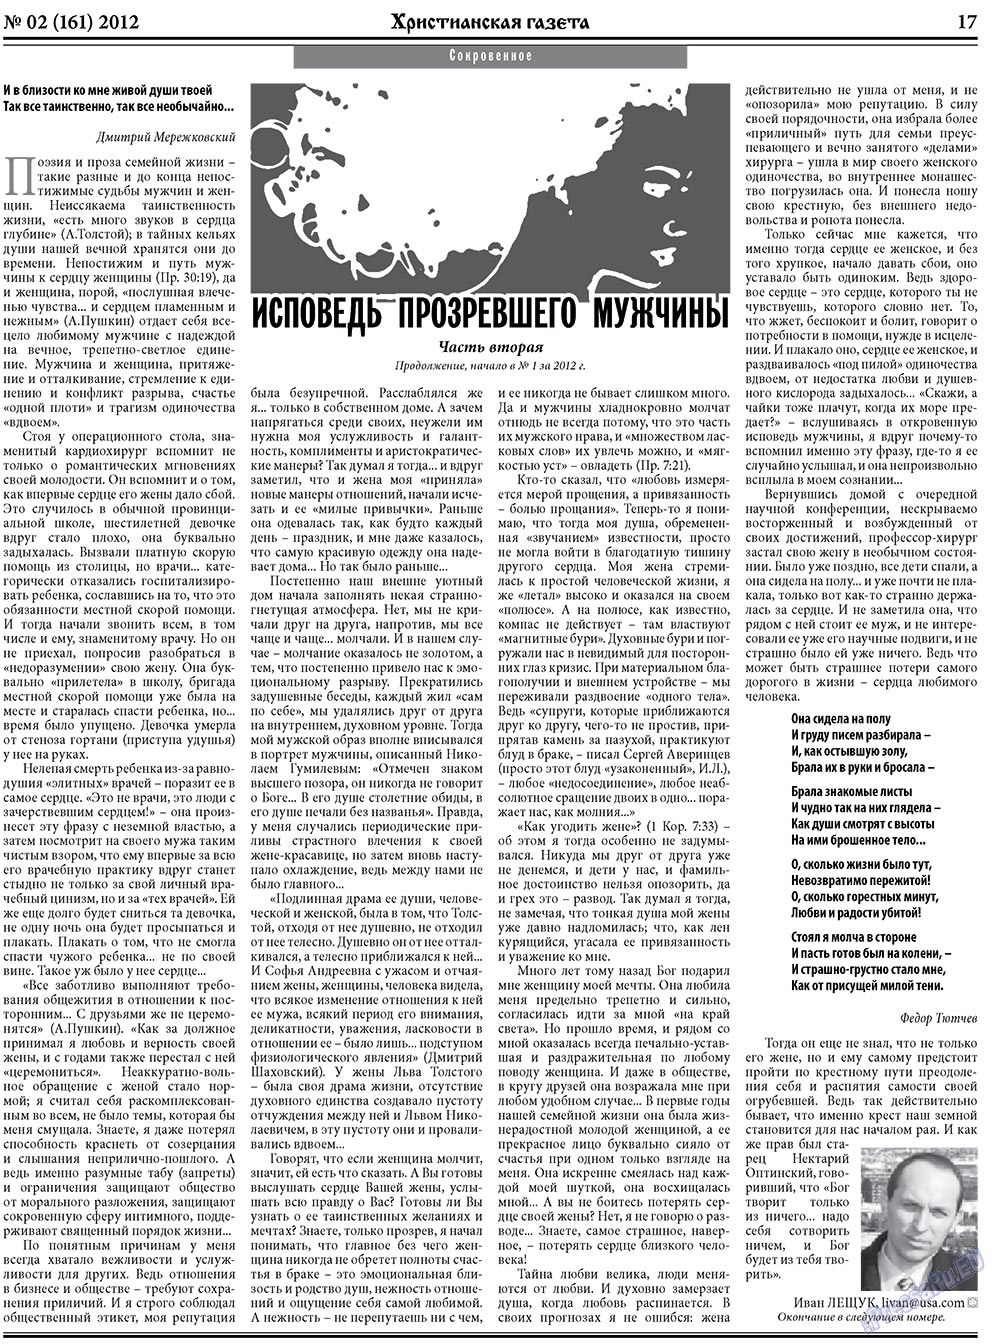 Христианская газета, газета. 2012 №2 стр.25